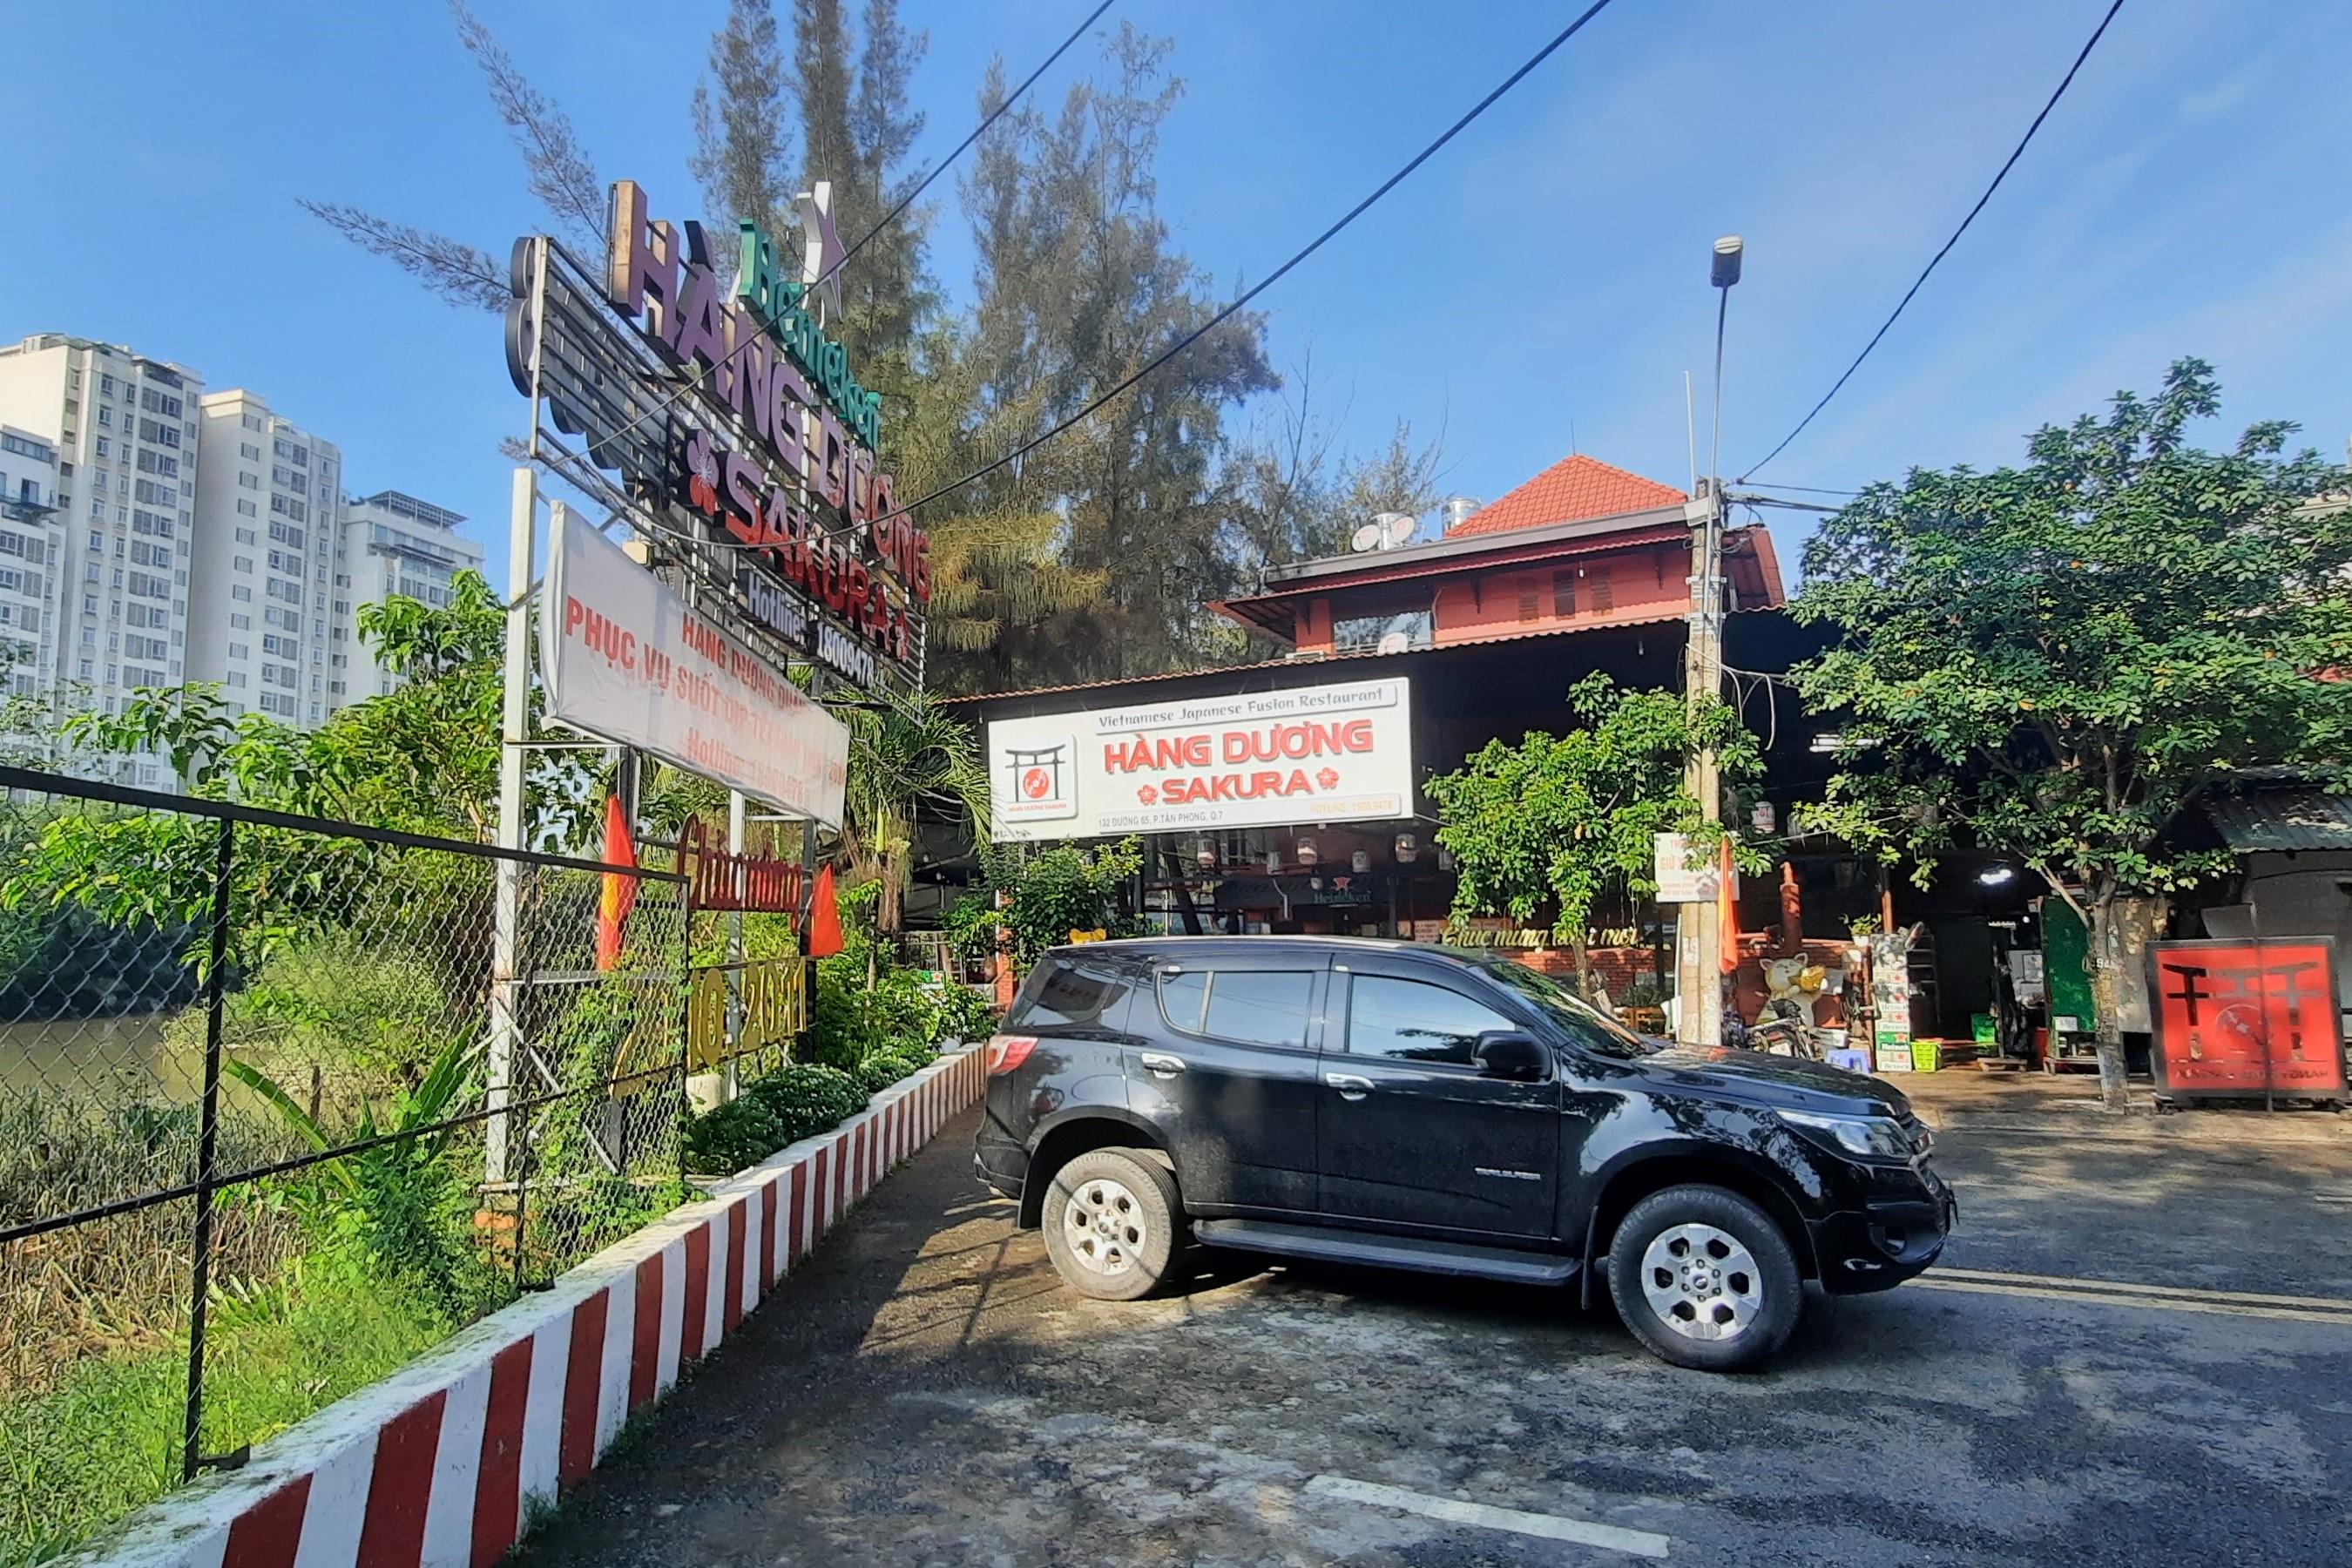 TP. Hồ Chí Minh: Nhà hàng Hàng Dương ngang nhiên xây dựng trái phép, lấn chiếm đất công viên